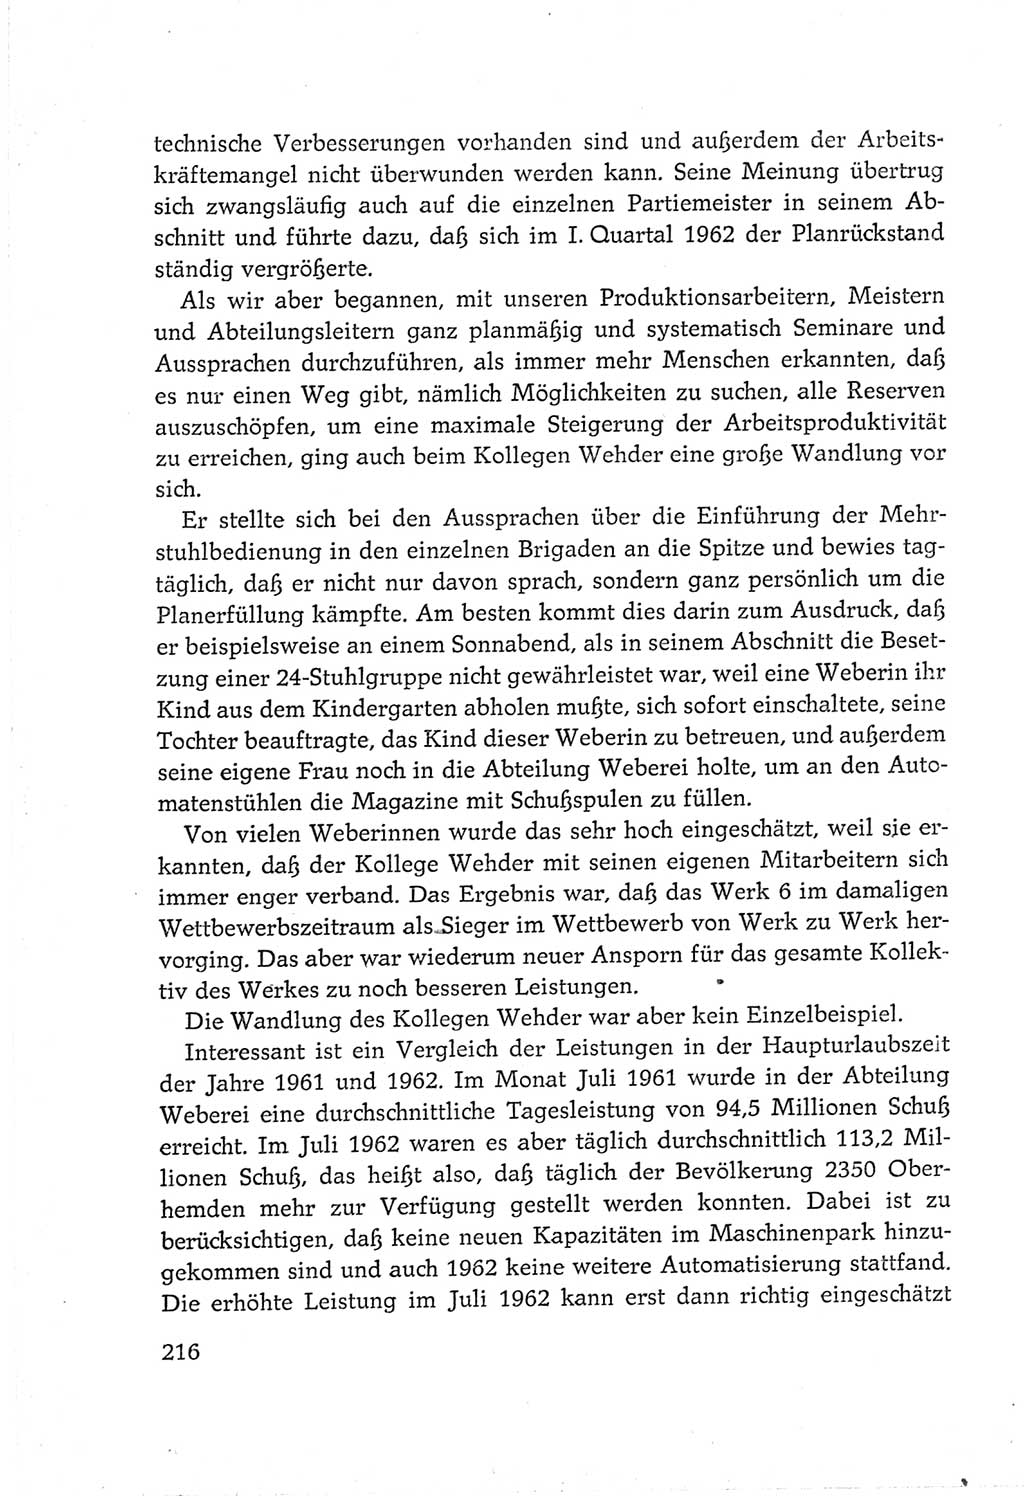 Protokoll der Verhandlungen des Ⅵ. Parteitages der Sozialistischen Einheitspartei Deutschlands (SED) [Deutsche Demokratische Republik (DDR)] 1963, Band Ⅲ, Seite 216 (Prot. Verh. Ⅵ. PT SED DDR 1963, Bd. Ⅲ, S. 216)